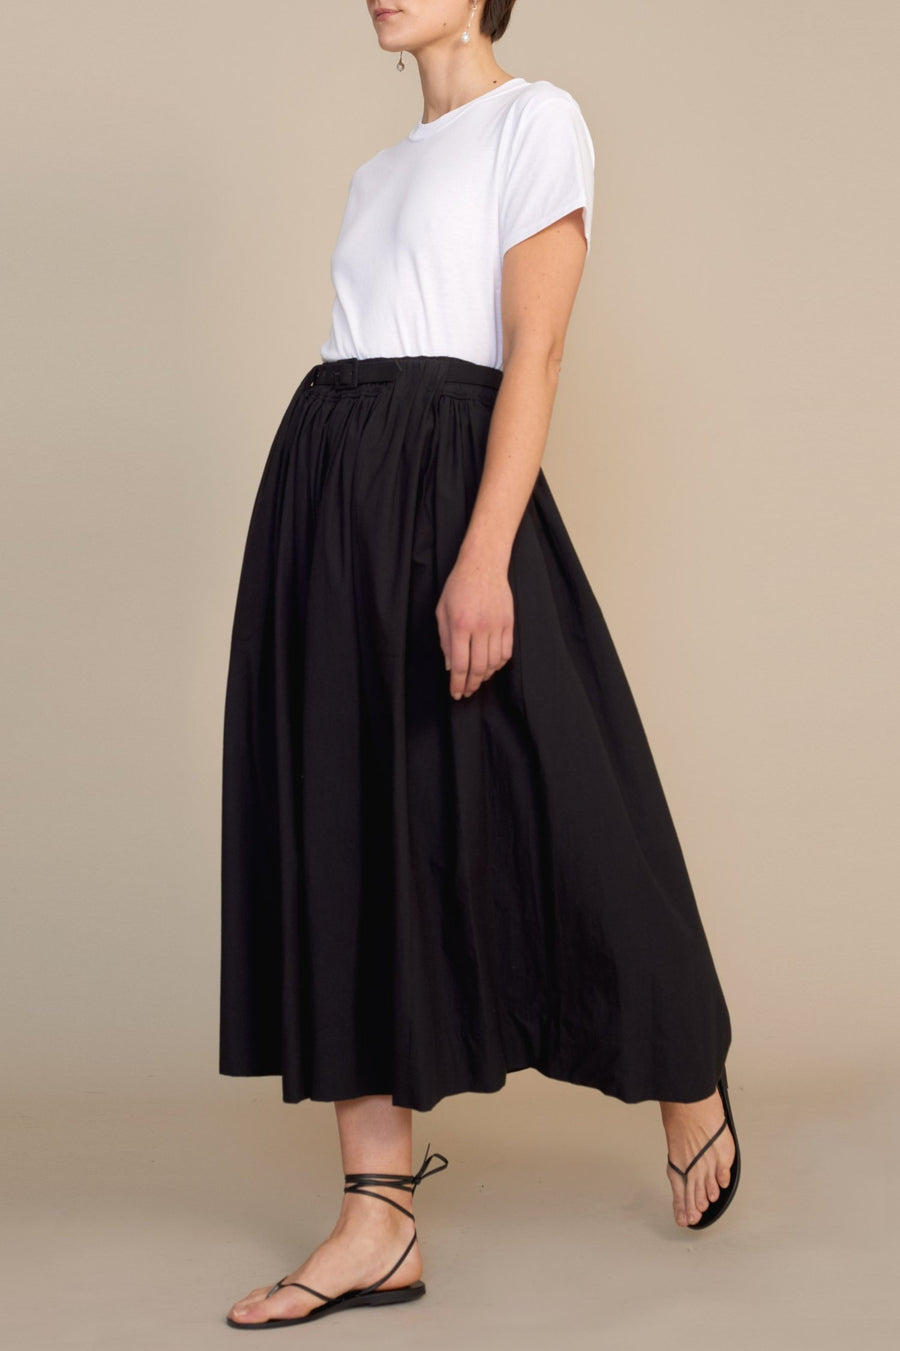 Patch Pocket Full Skirt in Black